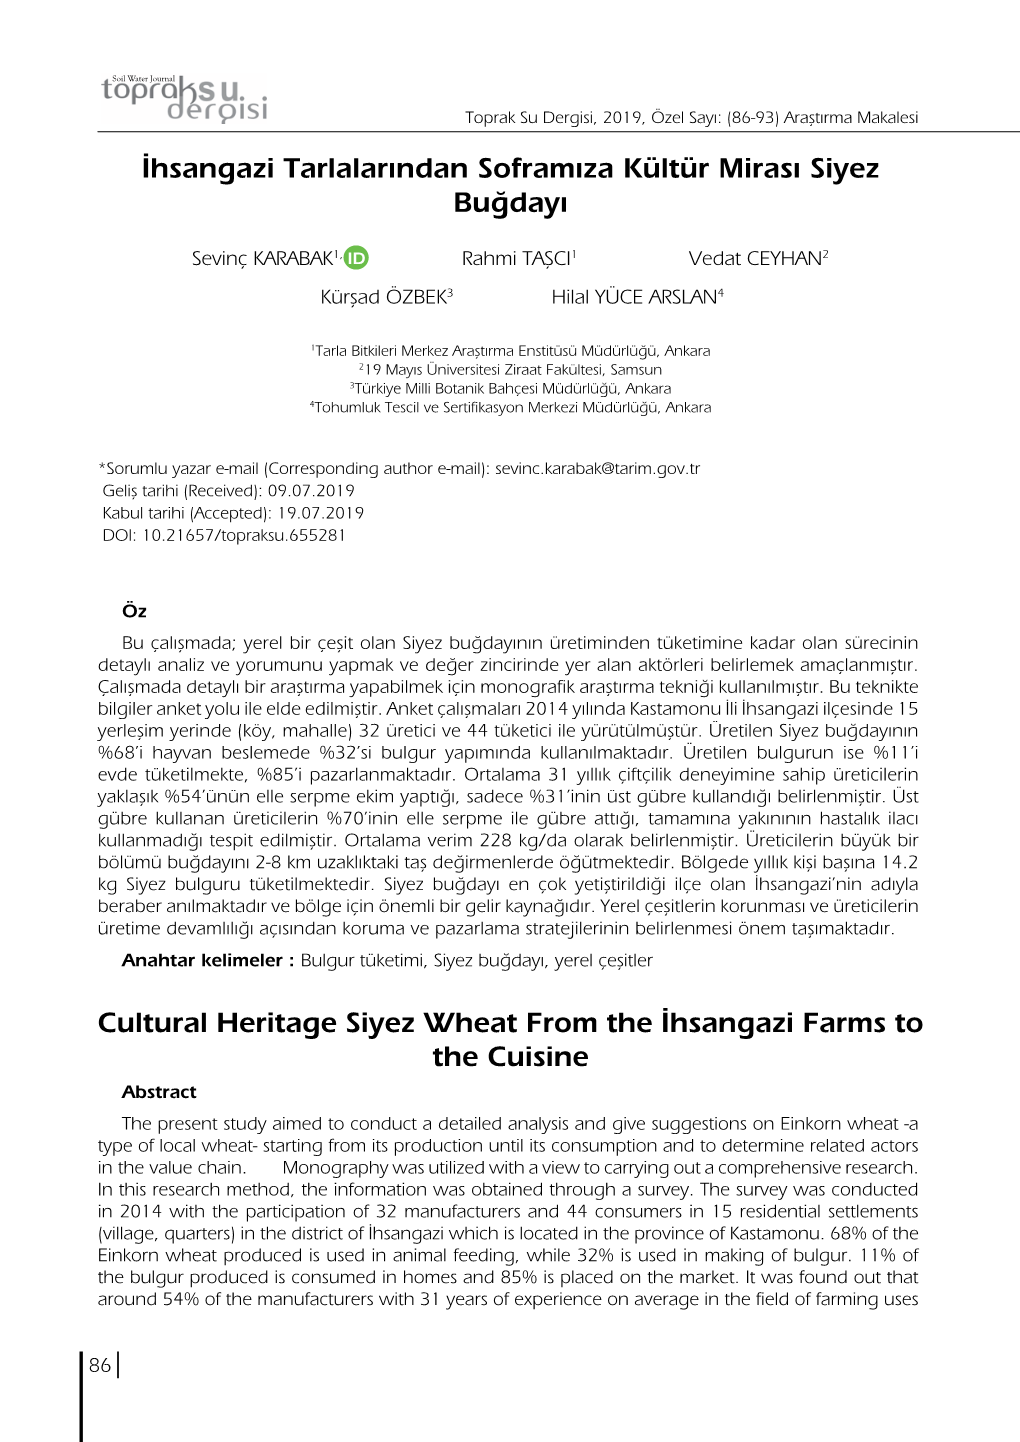 İhsangazi Tarlalarından Soframıza Kültür Mirası Siyez Buğdayı Cultural